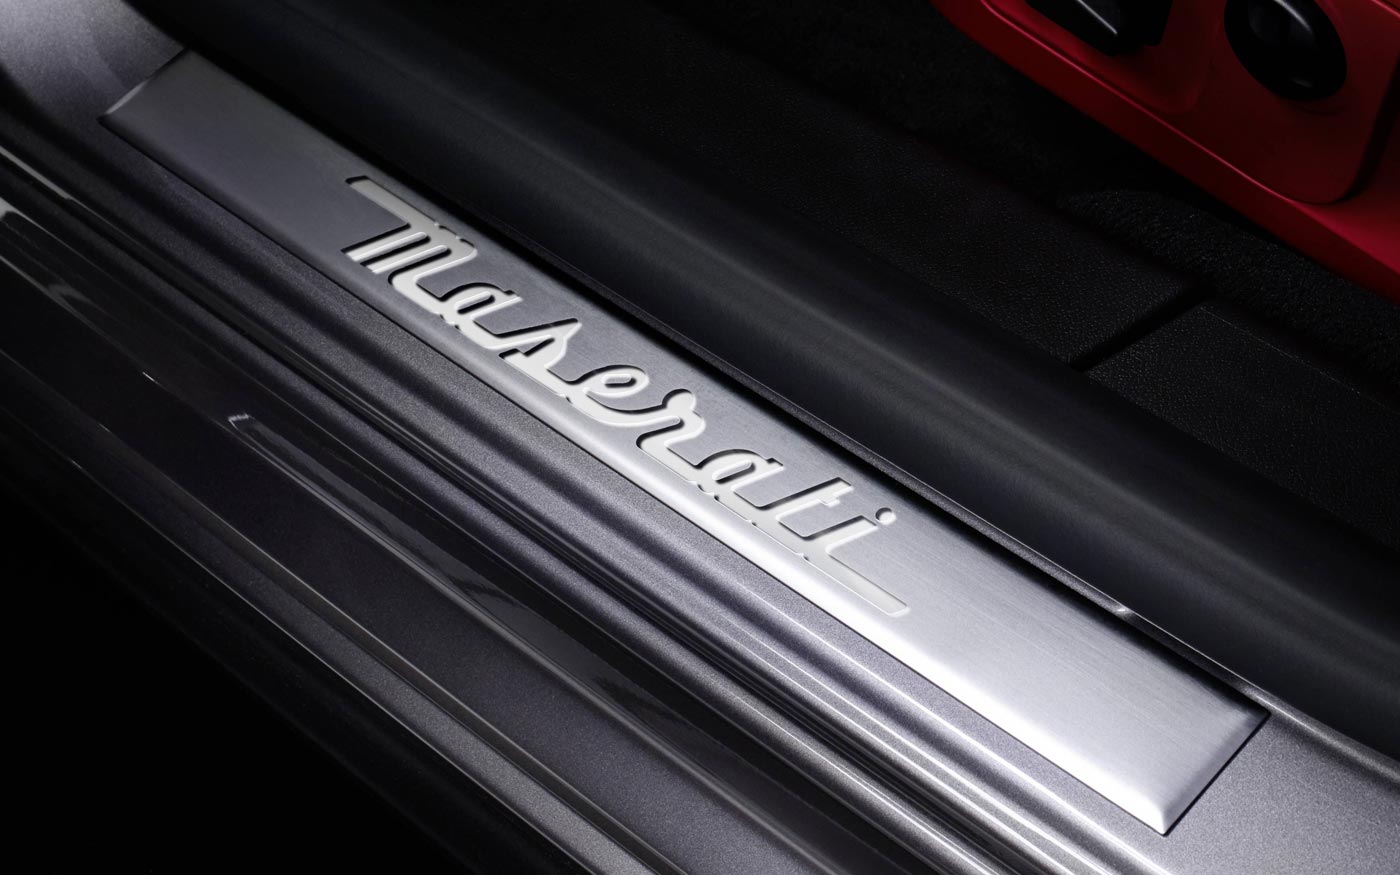 Illuminated Stainless Steel Door Sill Plates with Maserati Script